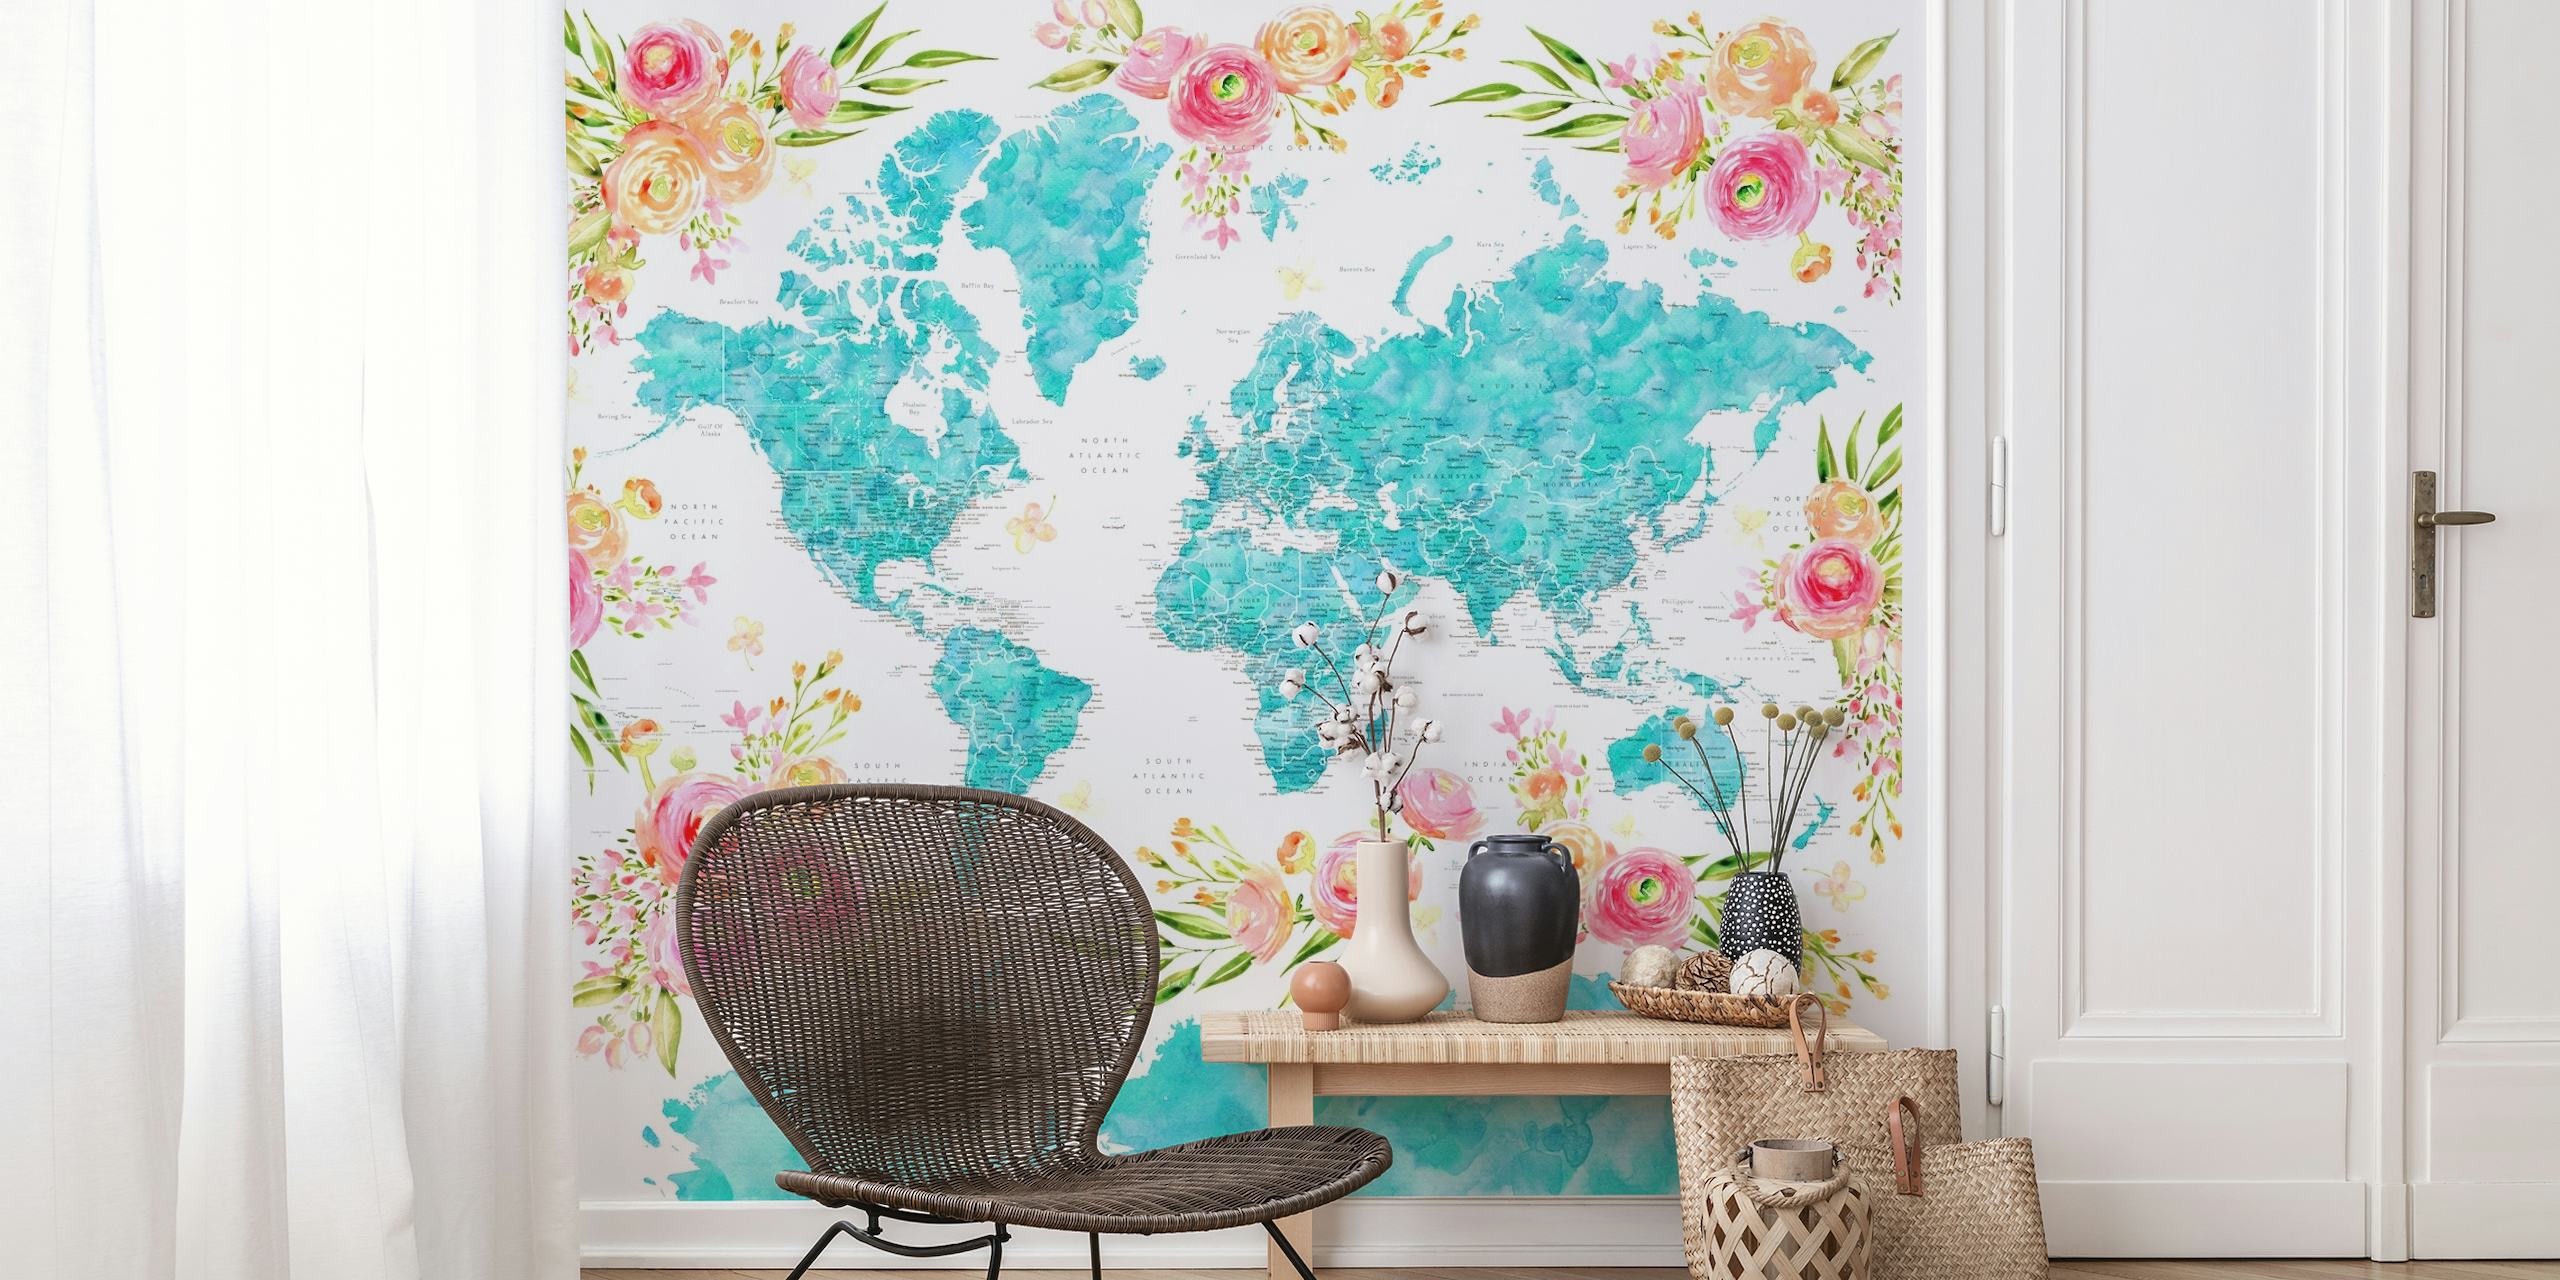 Fotomural colorido mapamundi con motivos florales decorando los continentes